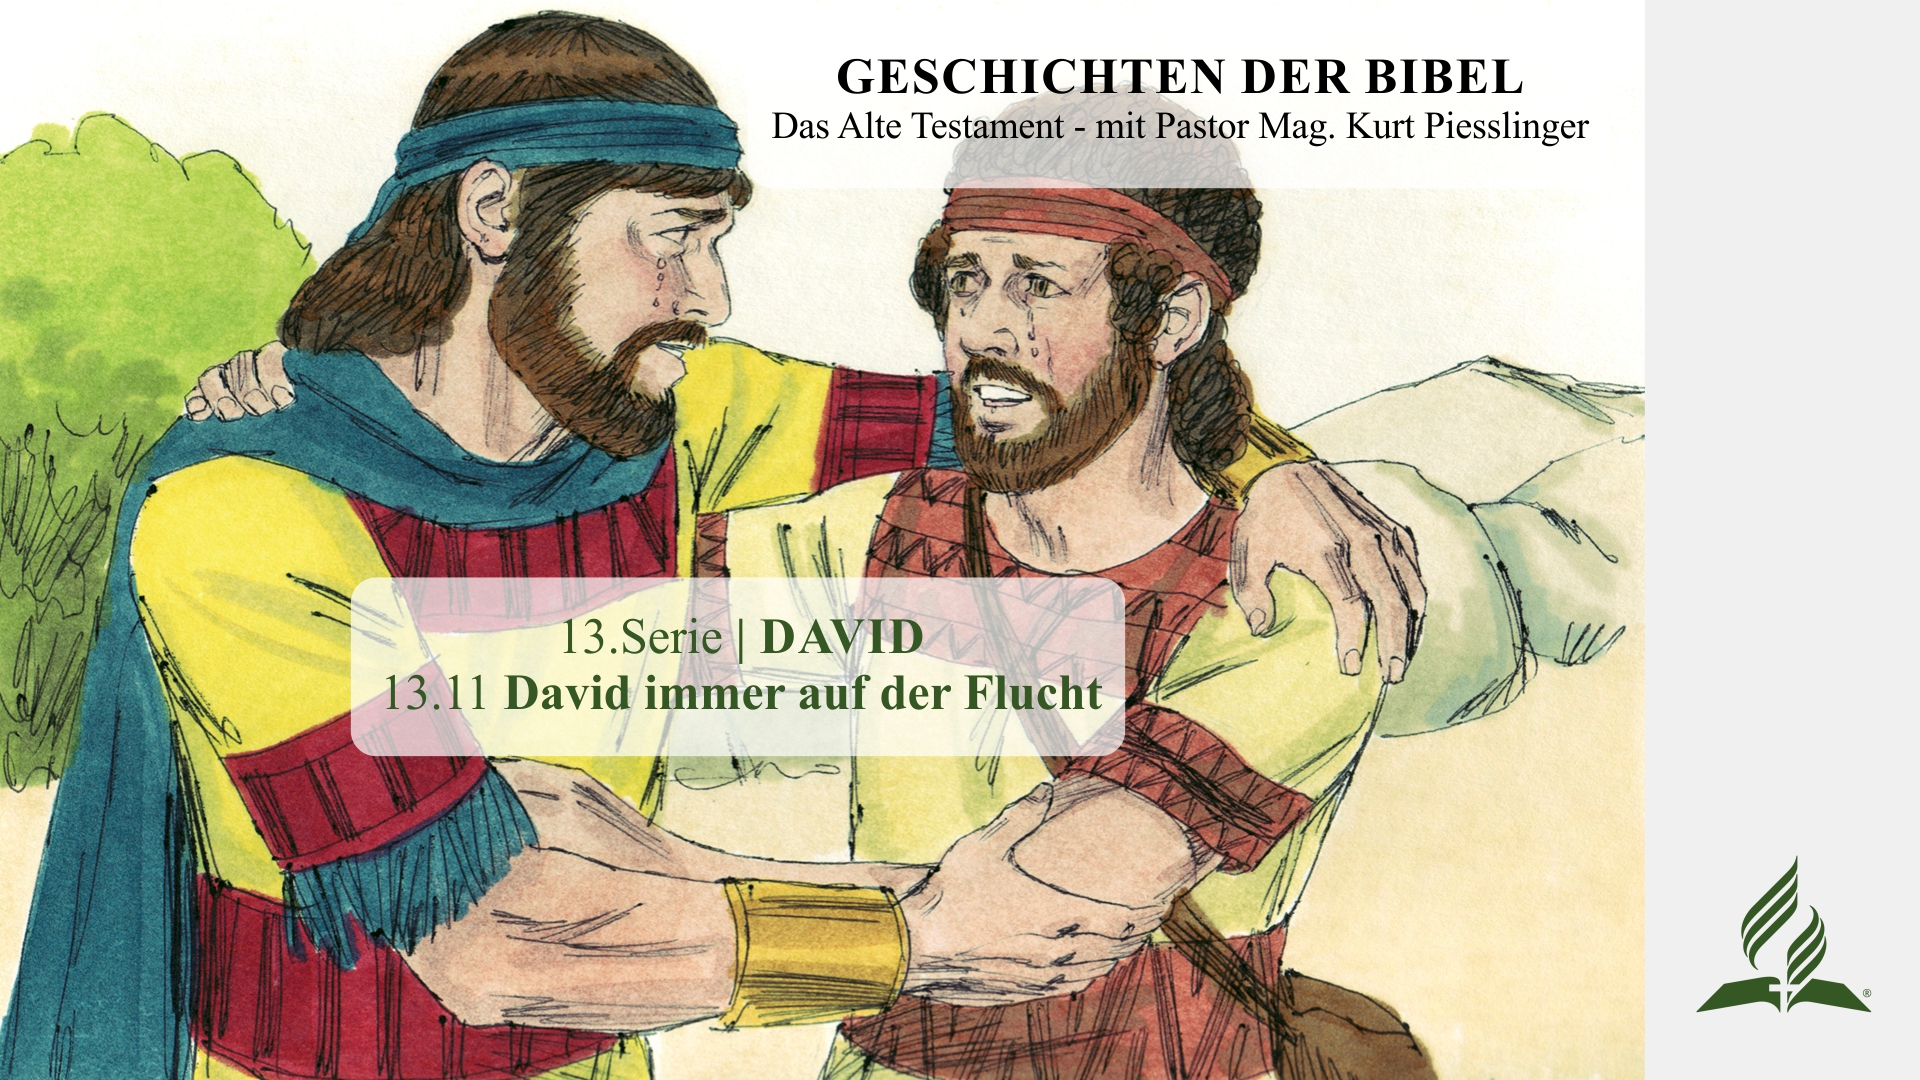 GESCHICHTEN DER BIBEL: 13.11 David immer auf der Flucht – 13.DAVID | Pastor Mag. Kurt Piesslinger